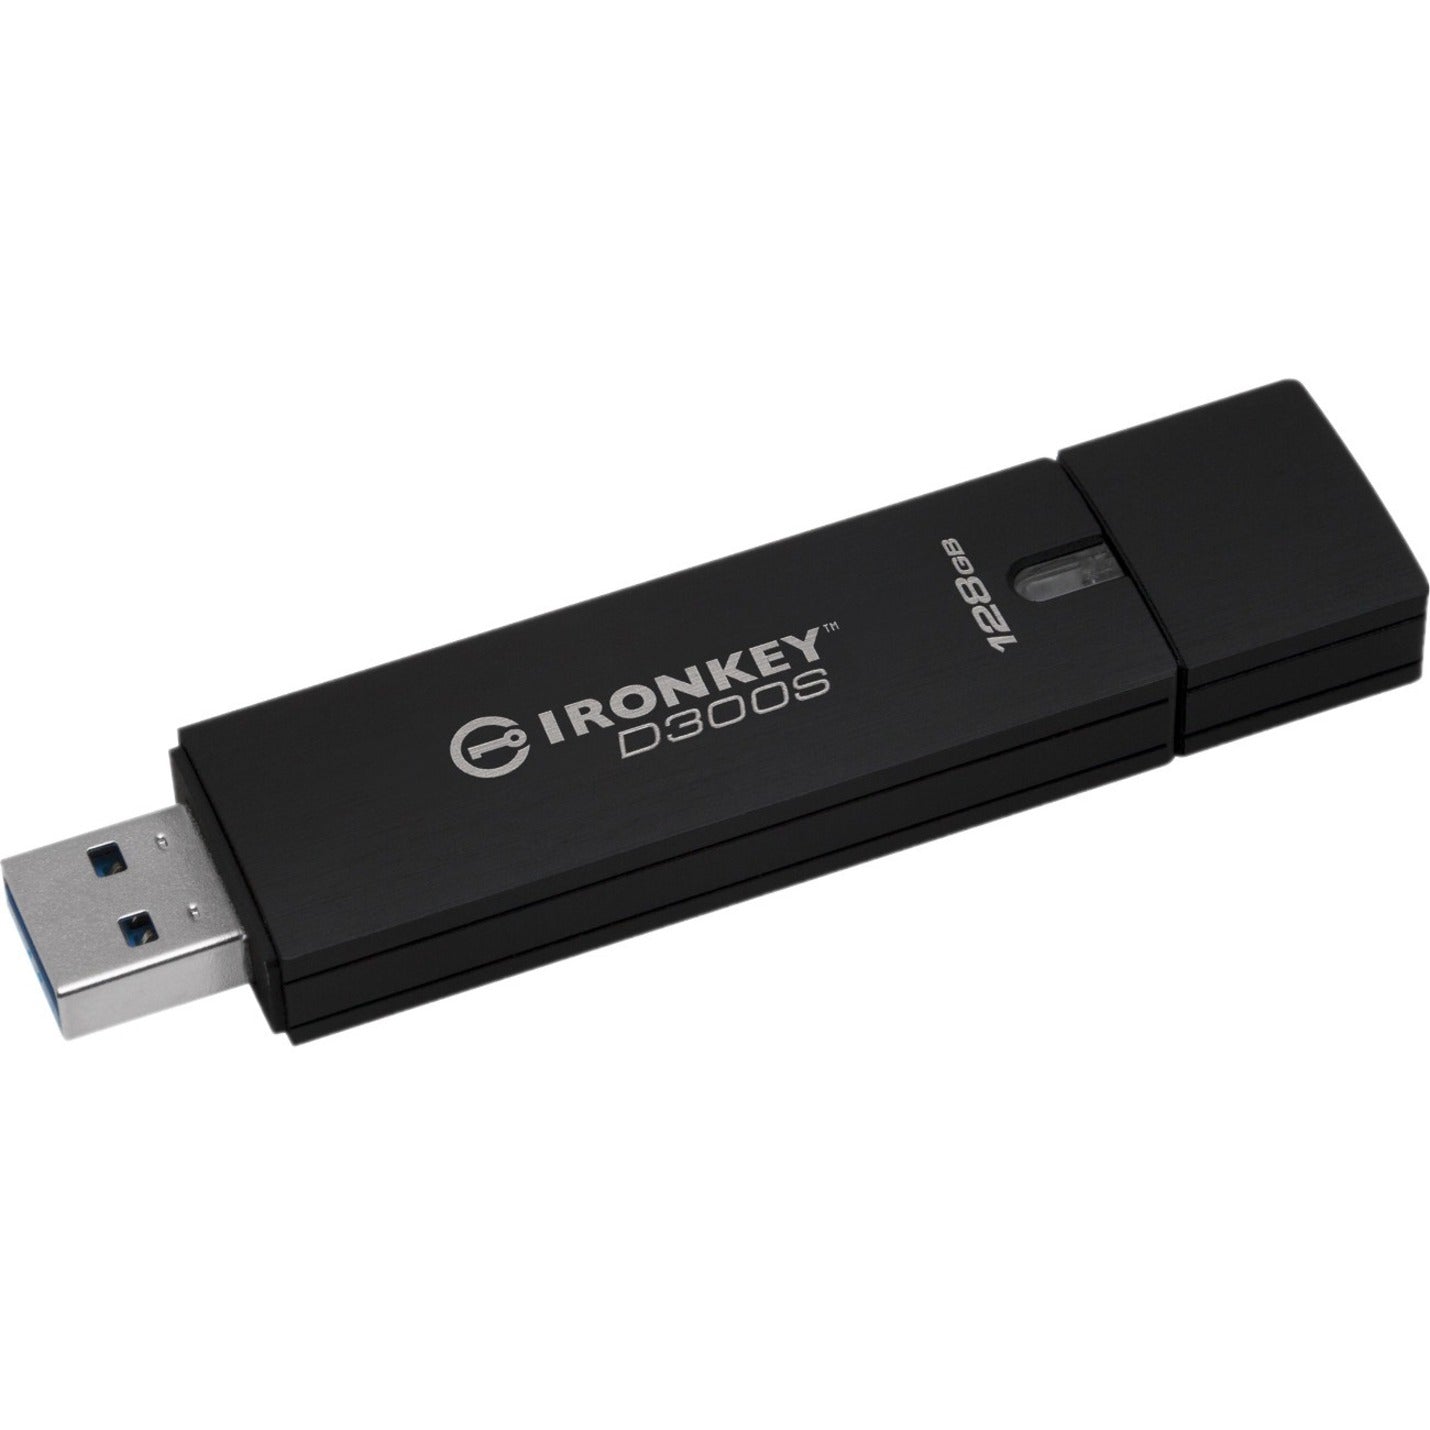 Kingston IKD300S/128GB IronKey D300 D300S USB 3.1 Flash Drive, 128GB Storage, 256-bit AES Encryption